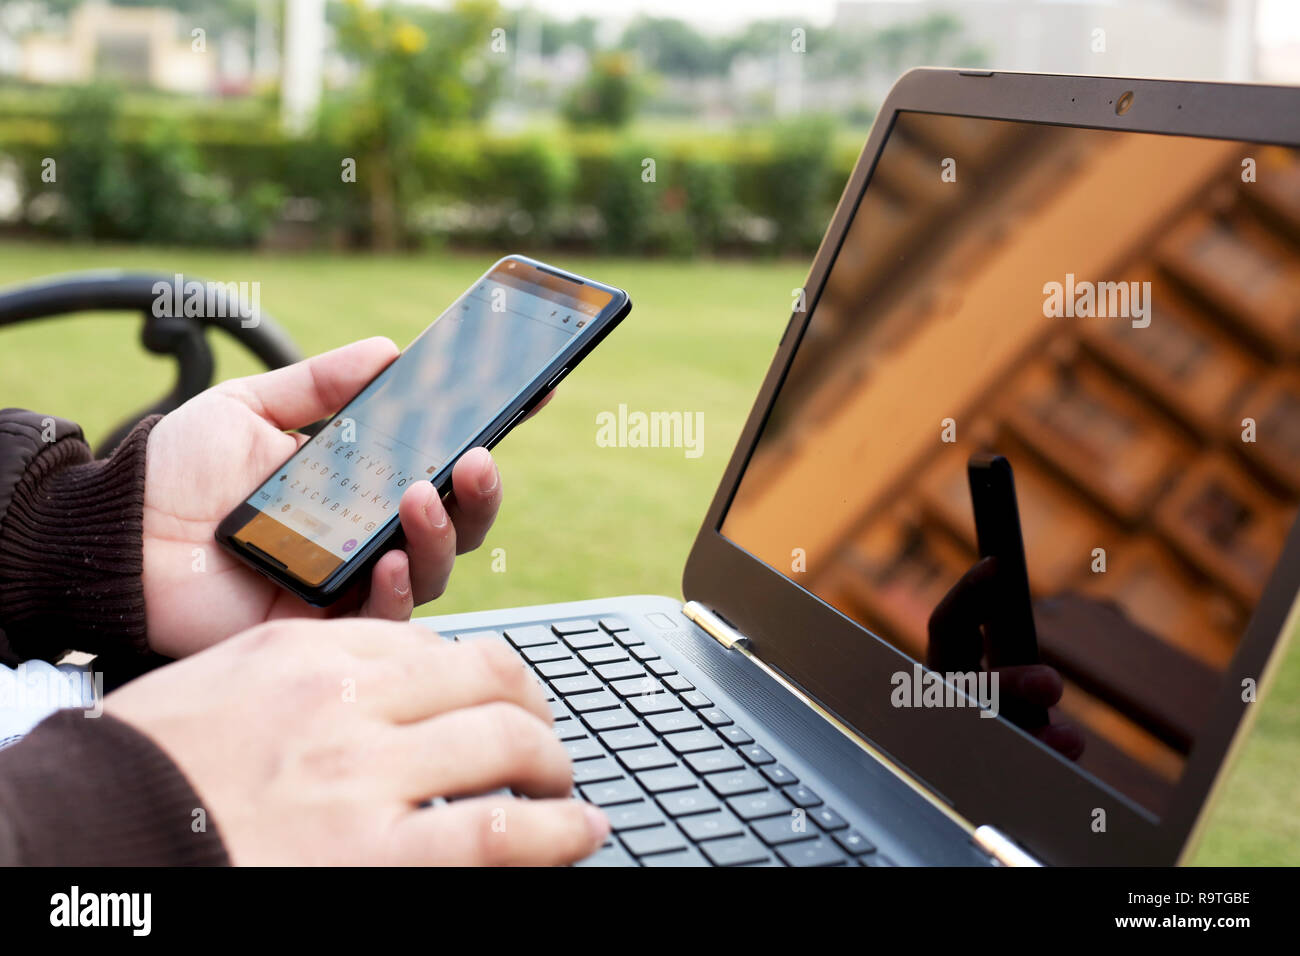 L'homme est holding smartphone dans la main avec l'ordinateur portable. Banque D'Images